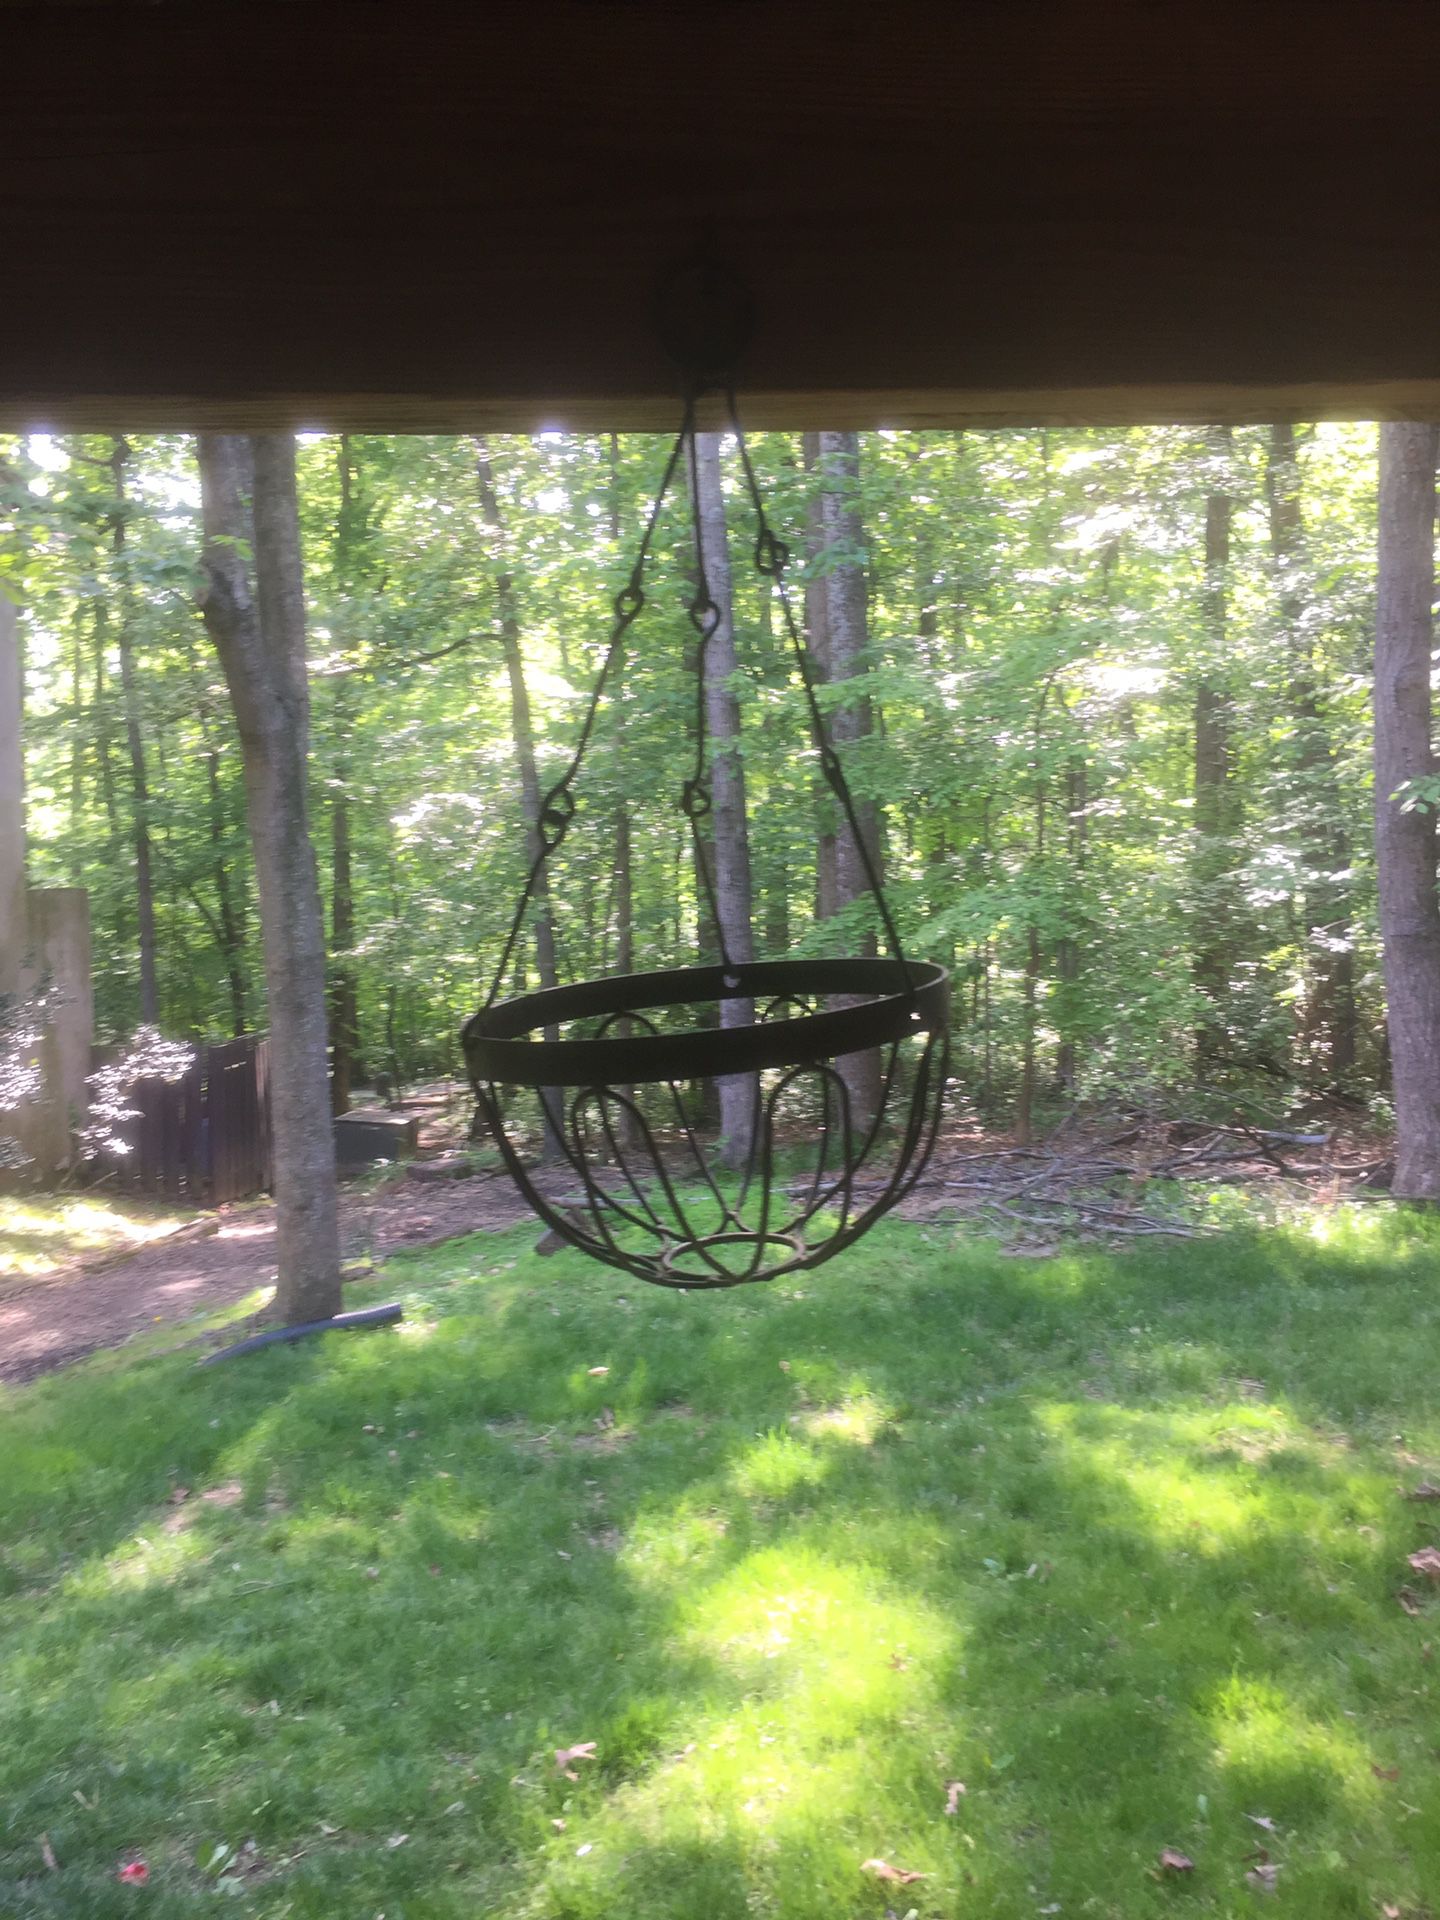 Three metal hanging baskets